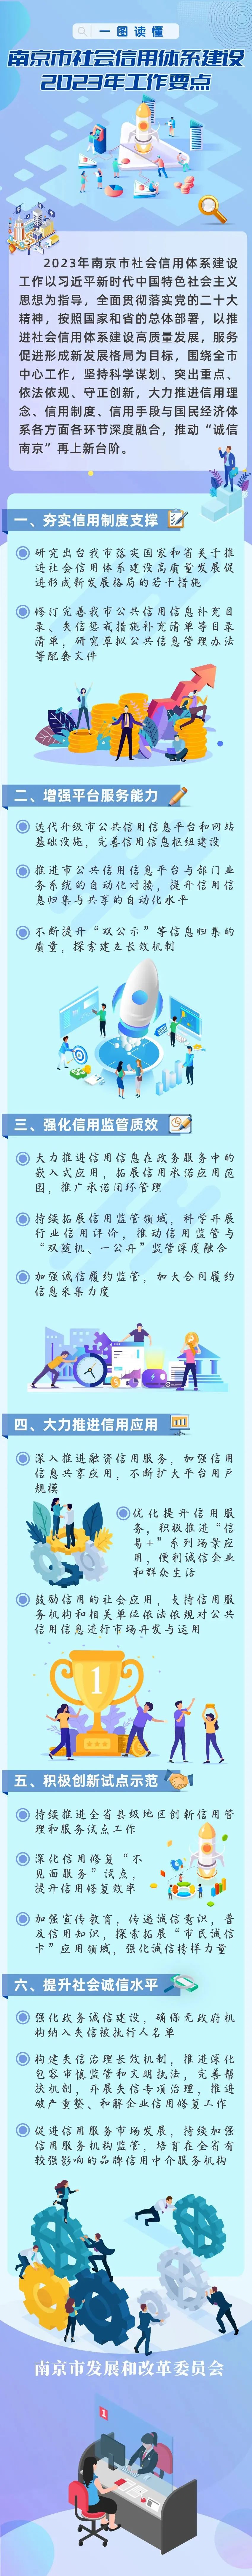 一图读懂 | 南京市发布2023年社会信用体系建设工作要点